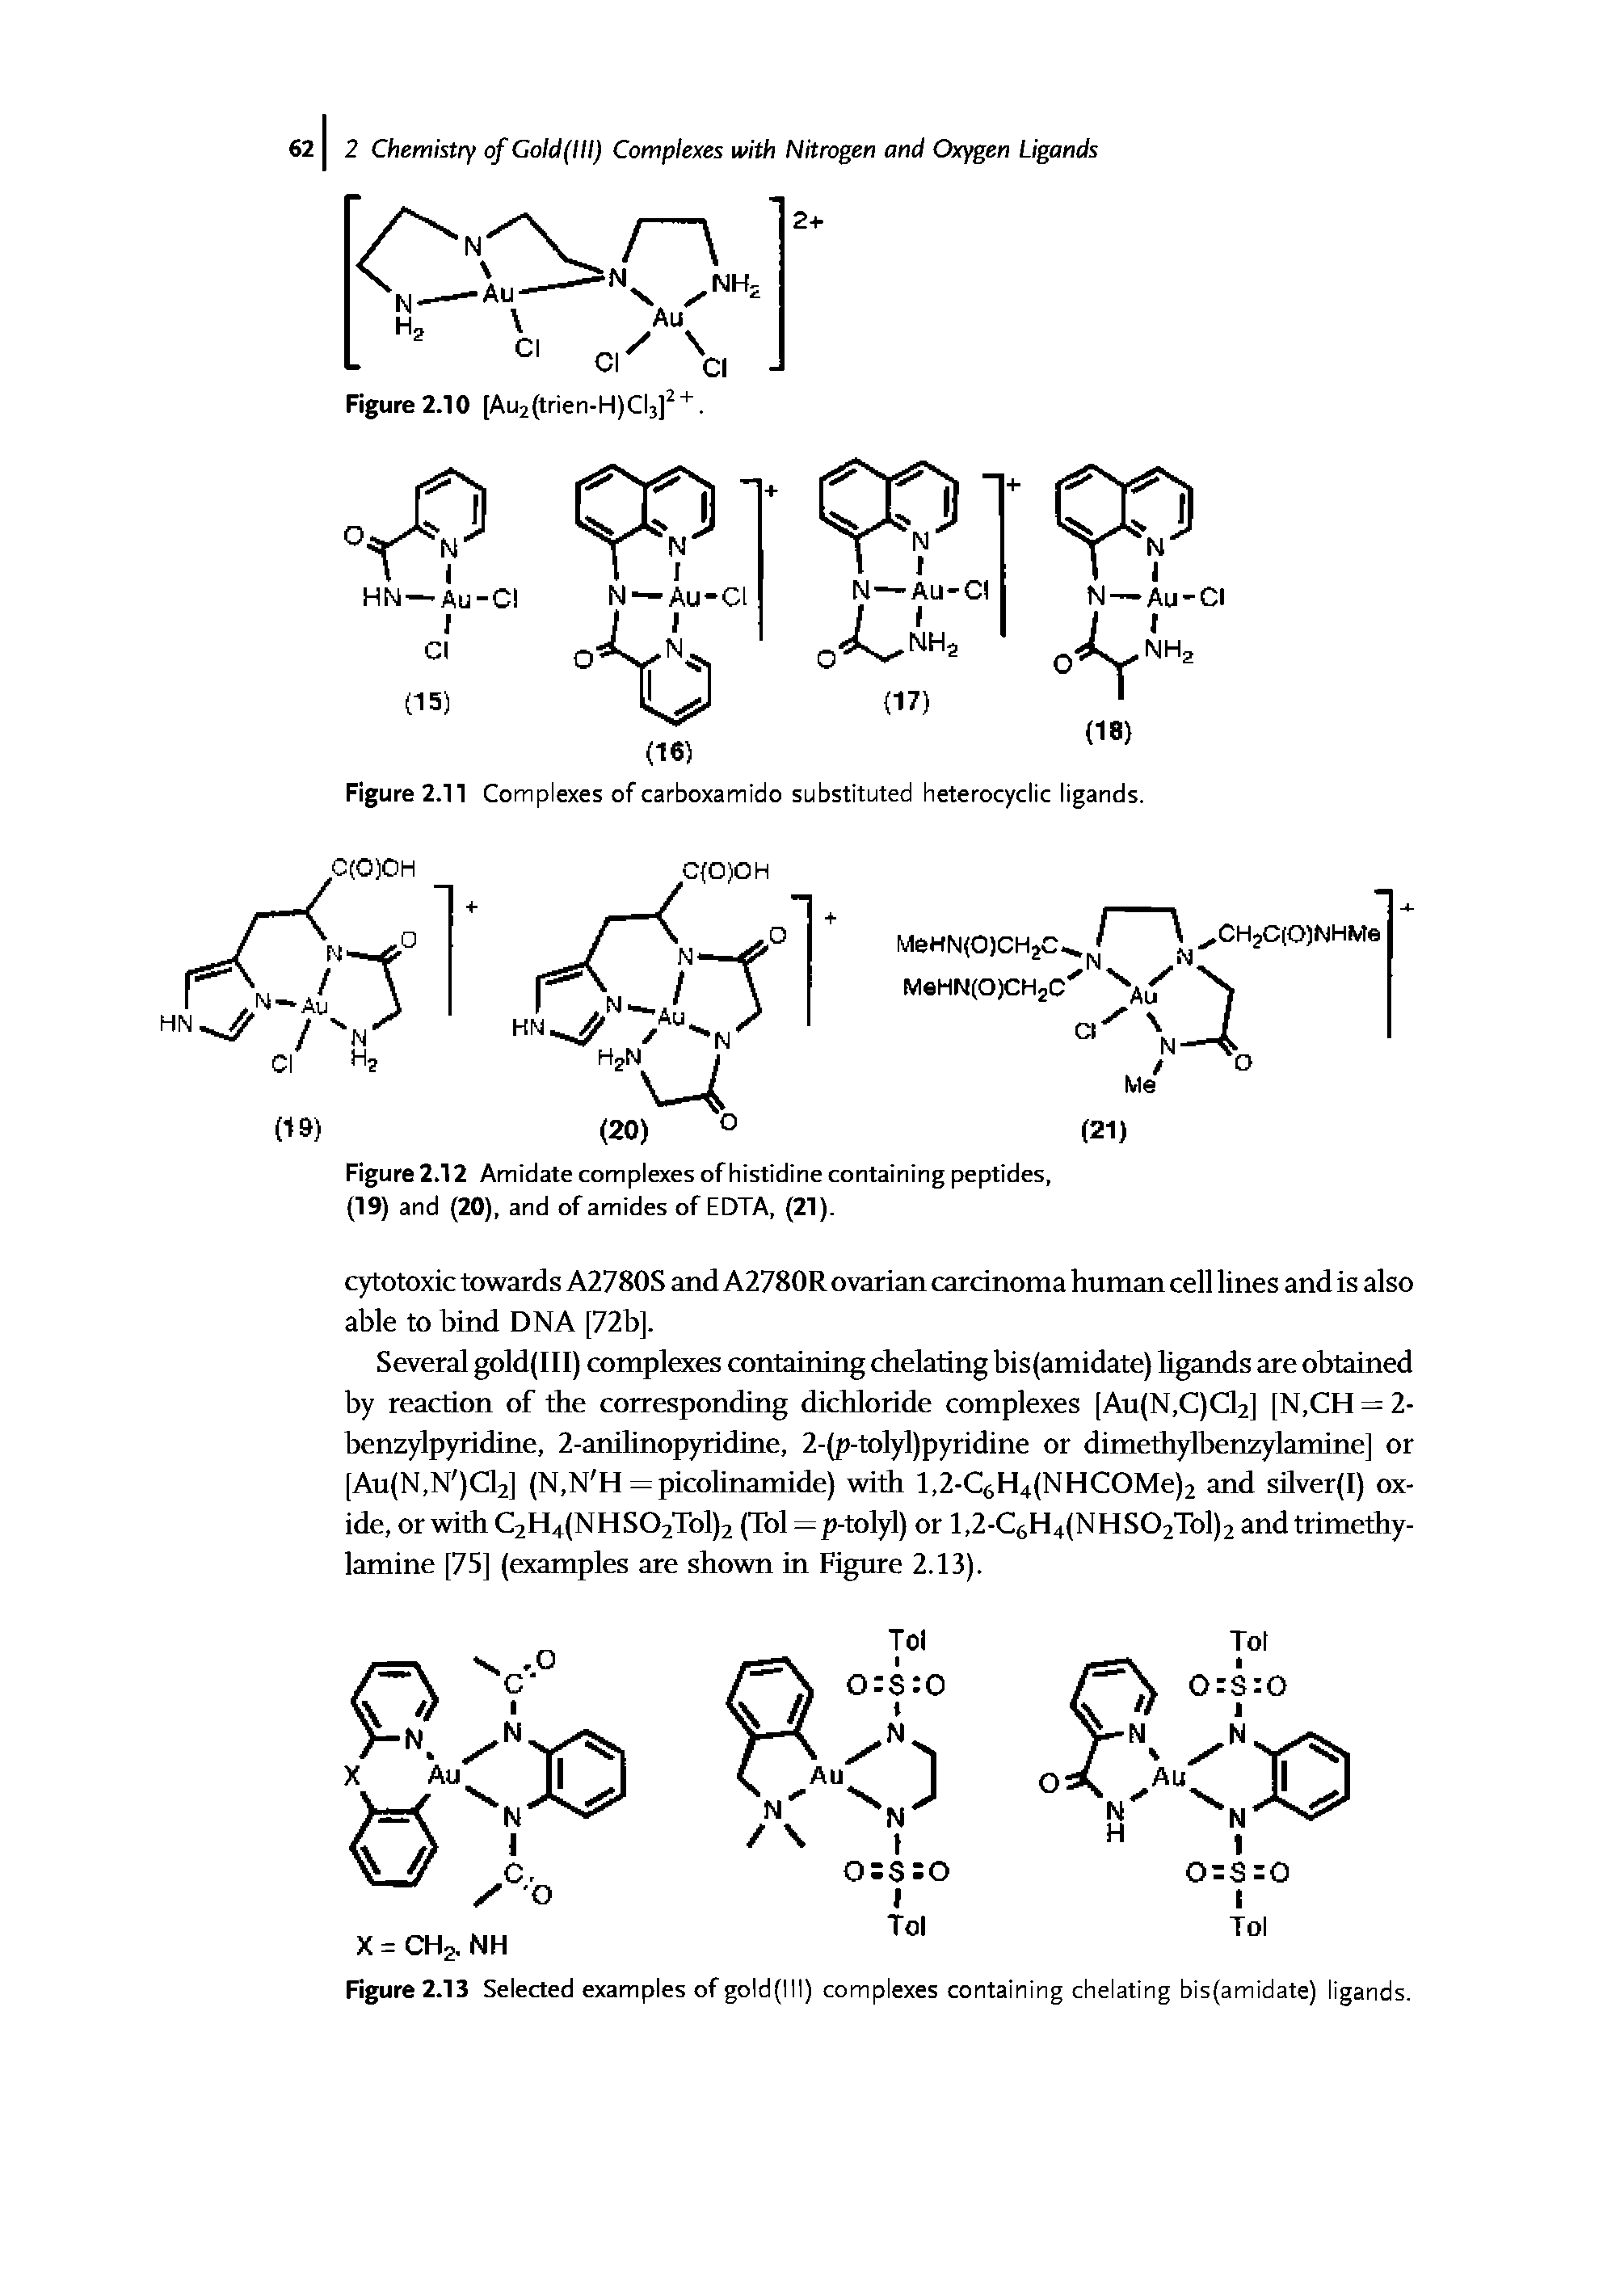 Figure 2.11 Complexes of carboxamido substituted heterocyclic ligands.